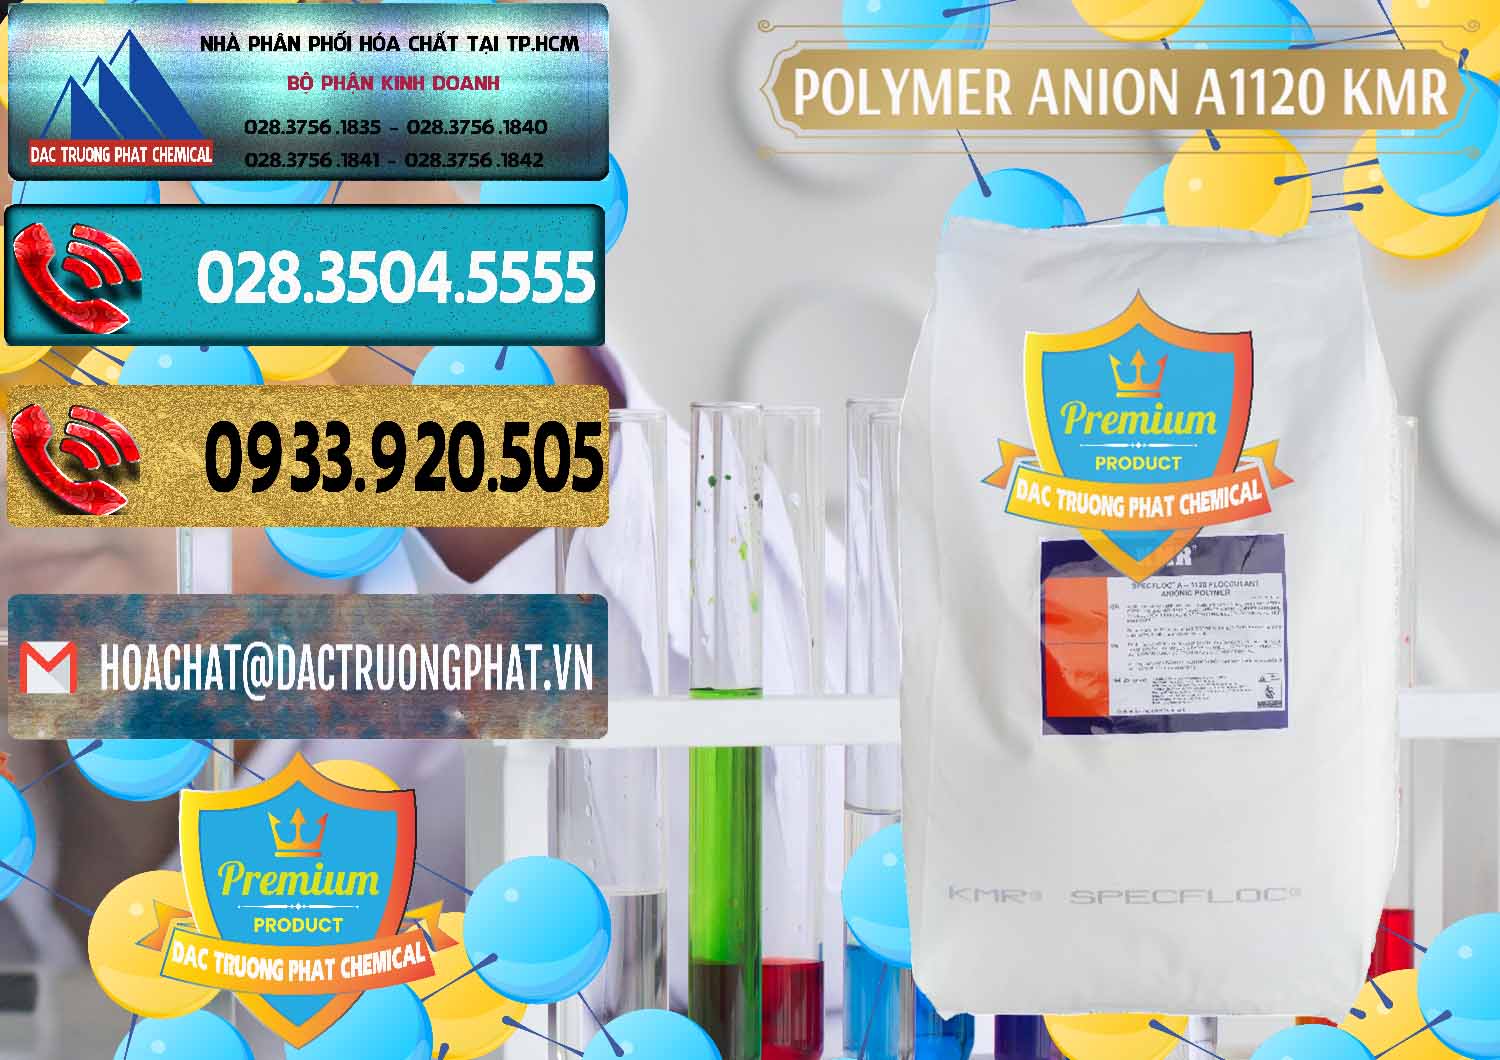 Nhà nhập khẩu và bán Polymer Anion A1120 - KMR Anh Quốc England - 0119 - Cty kinh doanh ( cung cấp ) hóa chất tại TP.HCM - hoachatdetnhuom.com